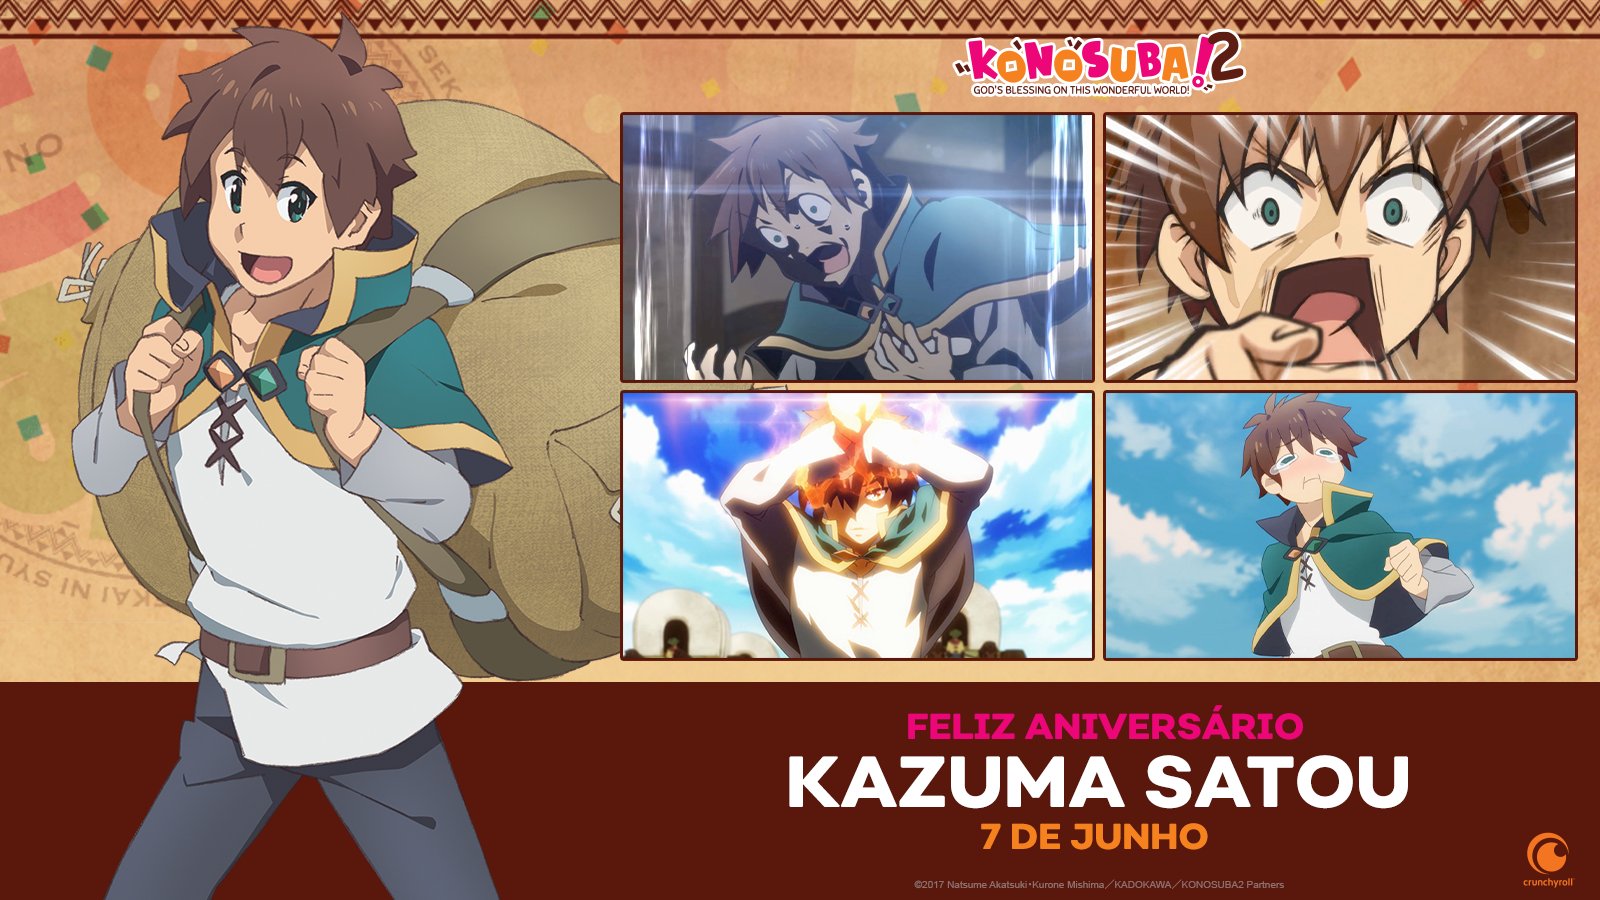 Crunchyroll.pt - (07/06) Feliz aniversário, Kazuma